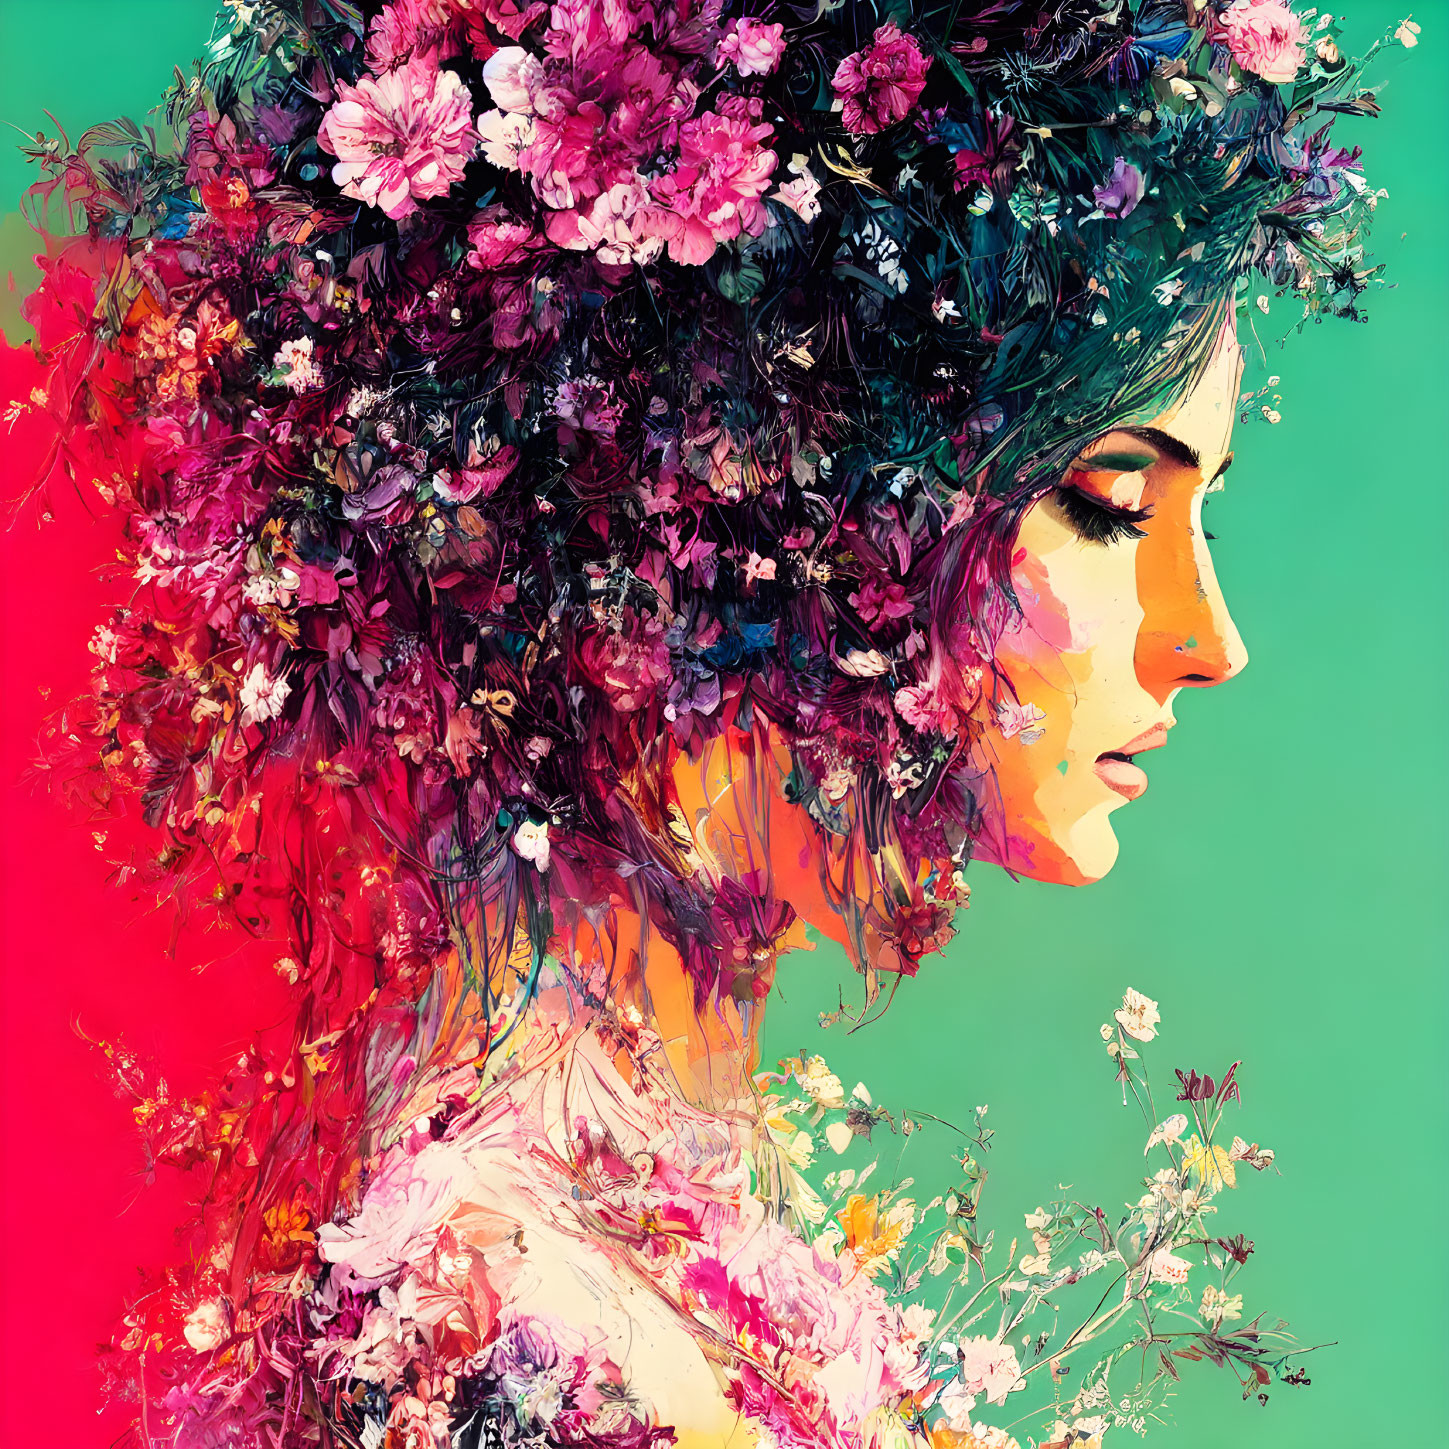 Colorful floral profile portrait against split-tone background